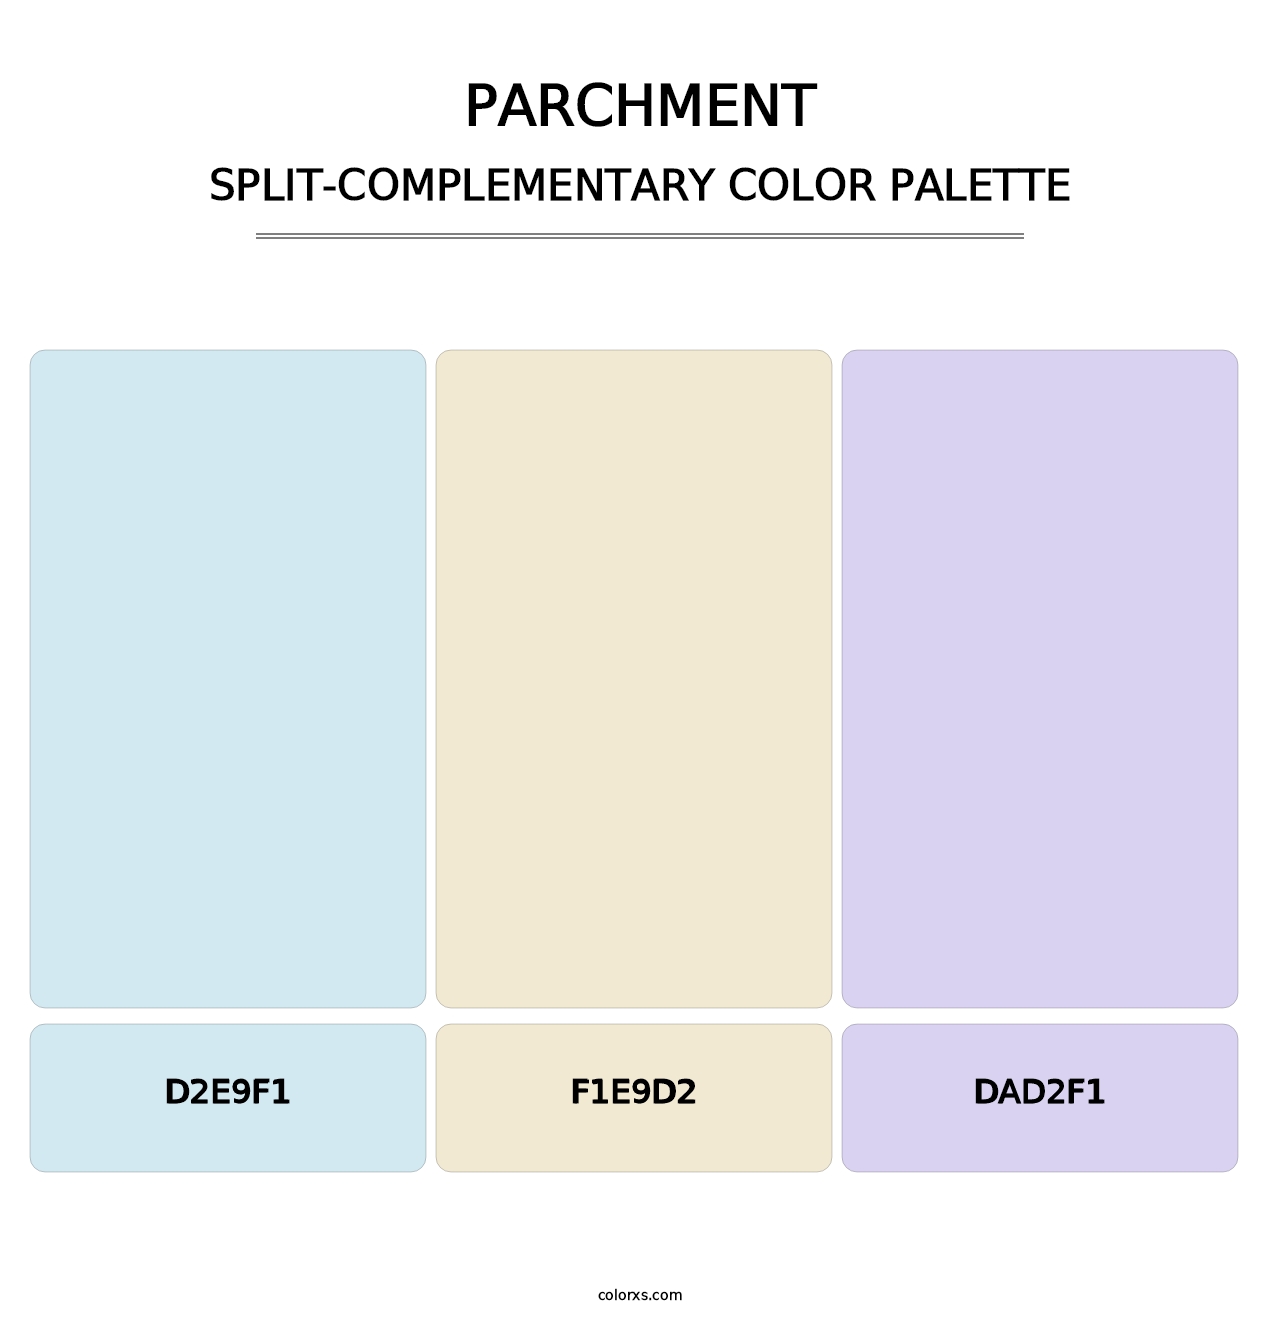 Parchment - Split-Complementary Color Palette